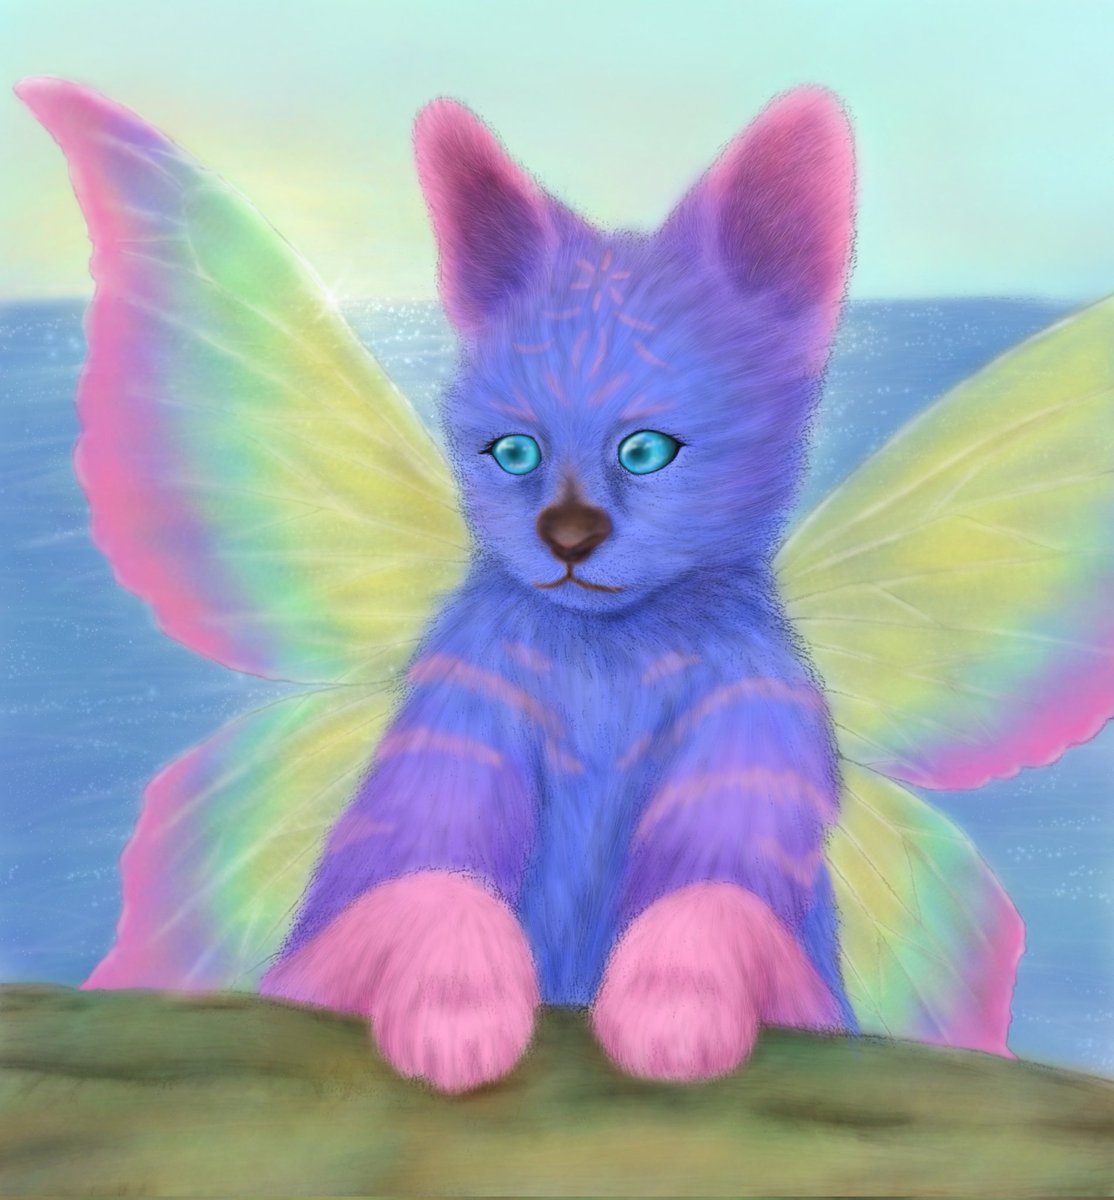 ☆フェアリーサーバル☆
今日はサーバルの子どもの妖精の目などを描きました！
#動物画
#animalart
#猫科動物
#絵描き